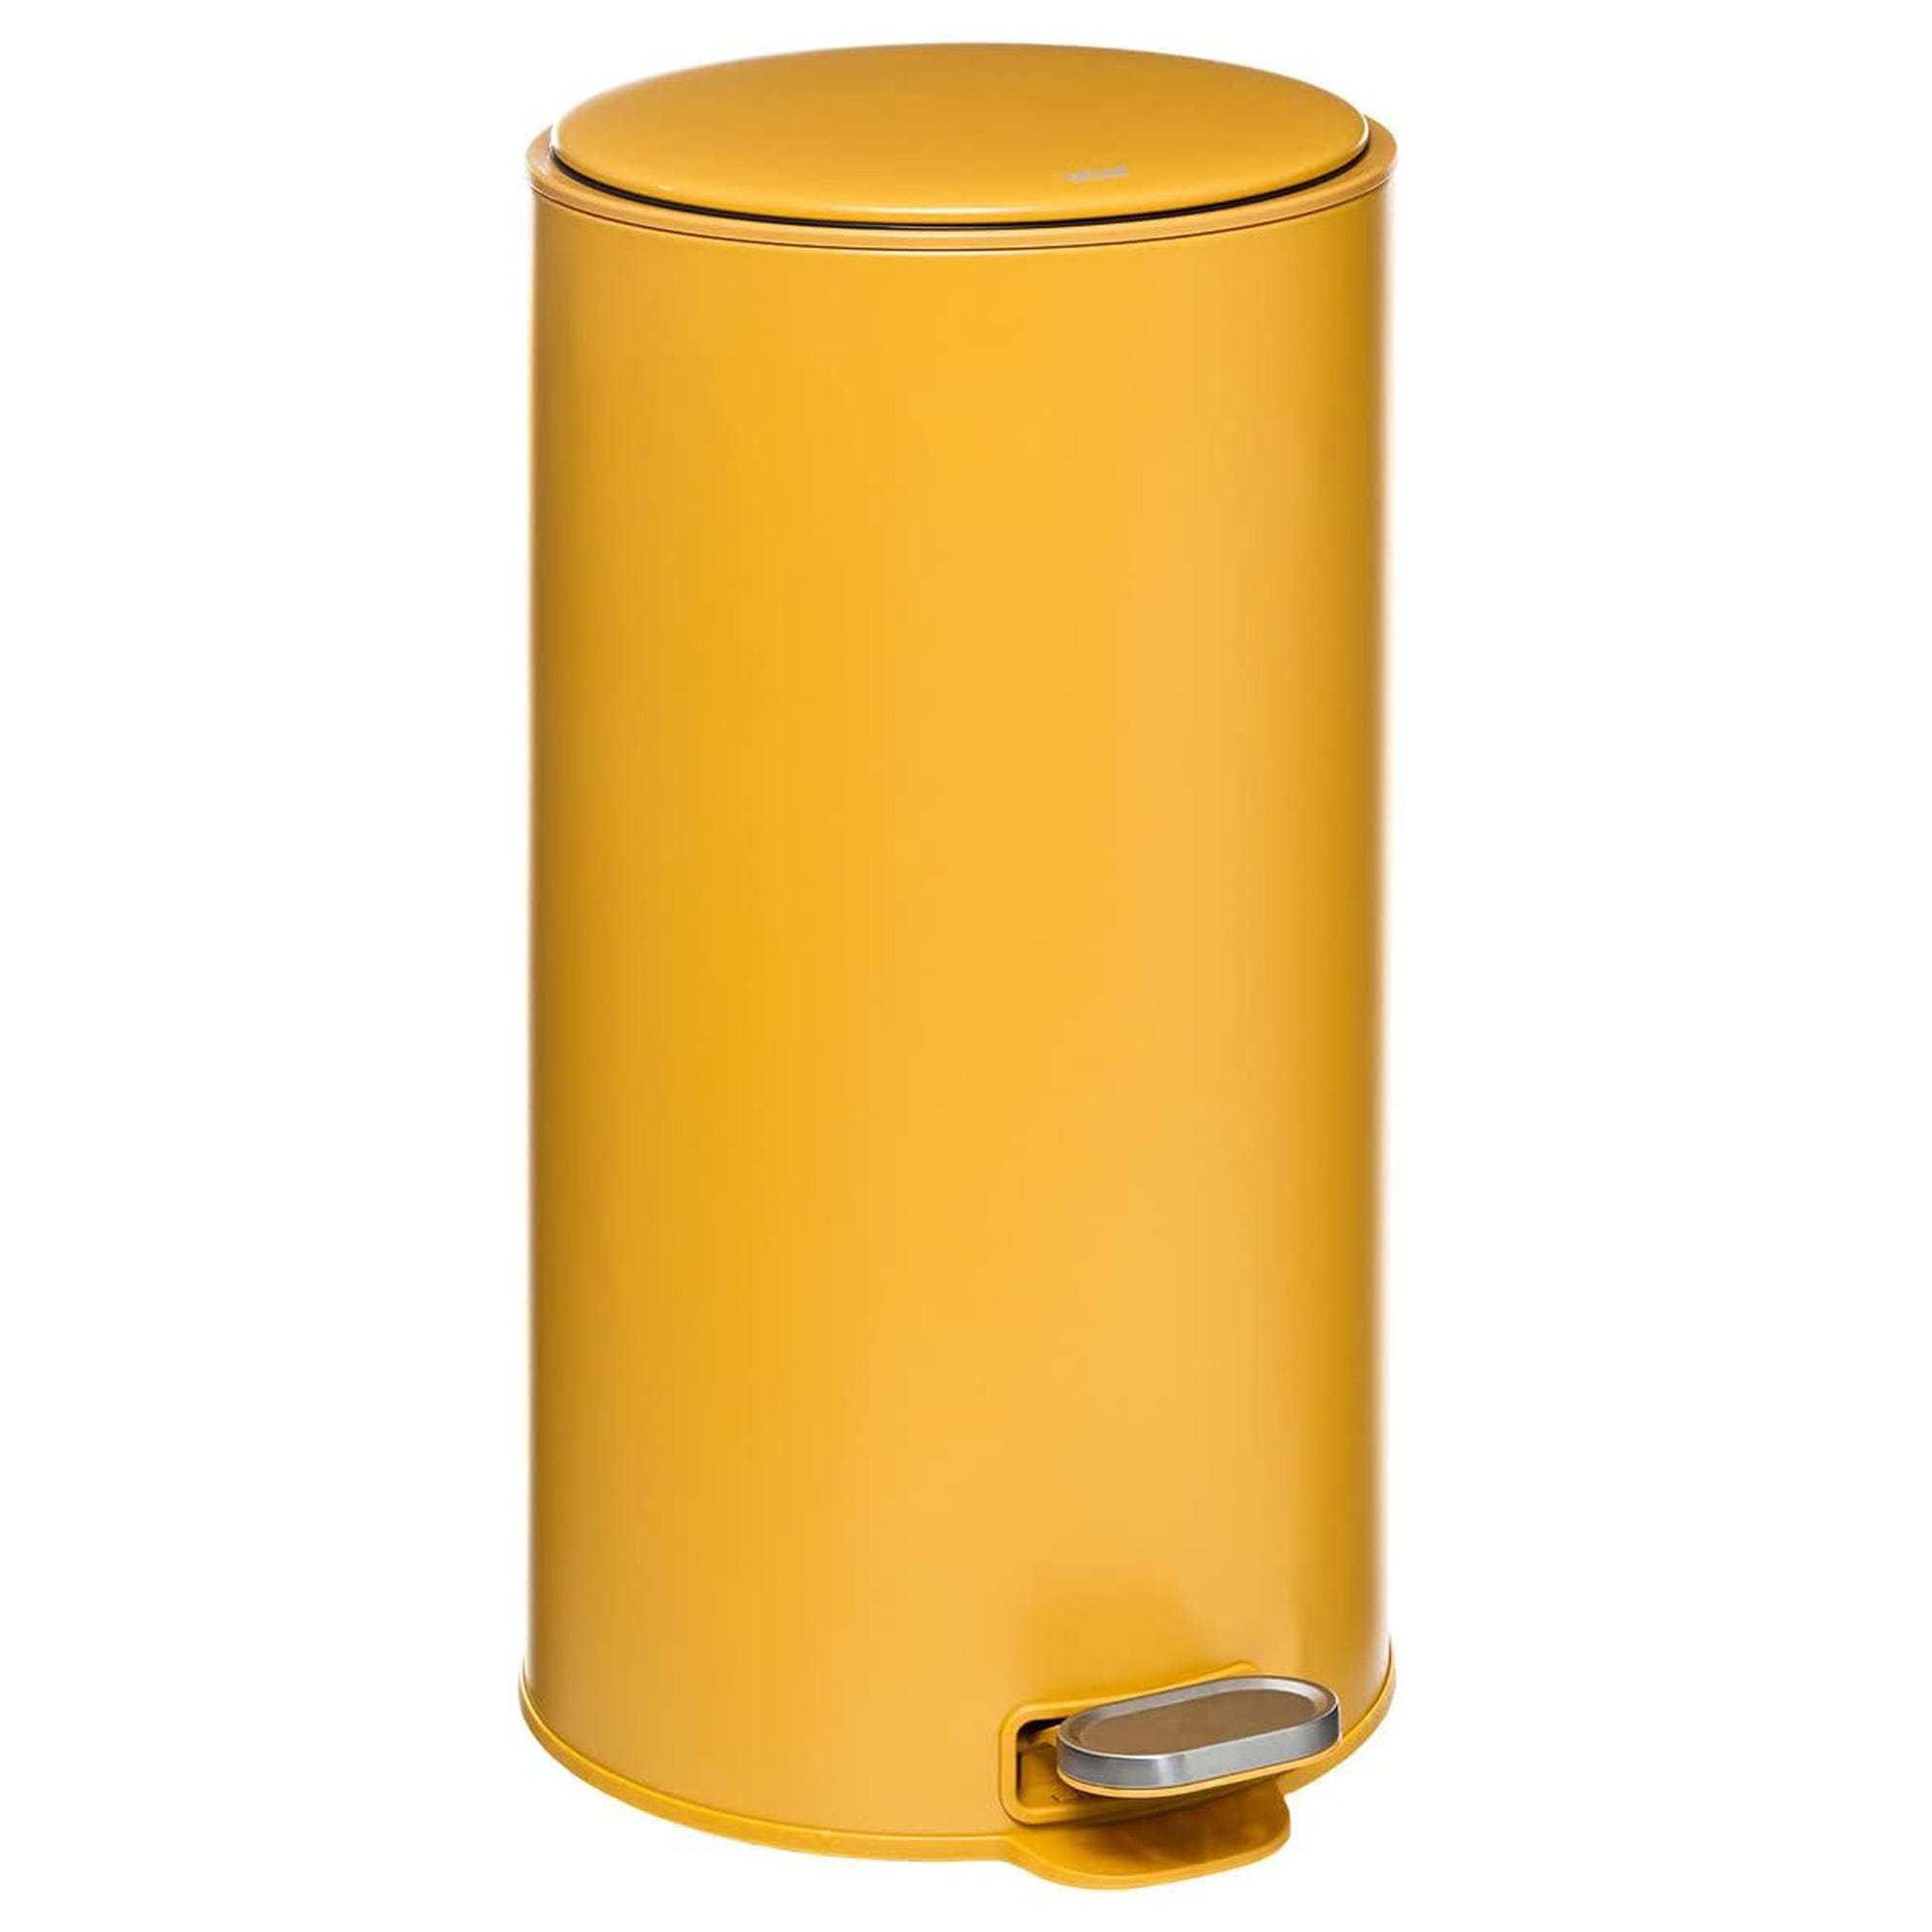 Cubo de Basura Amarillo Metálico Retro 20 litros